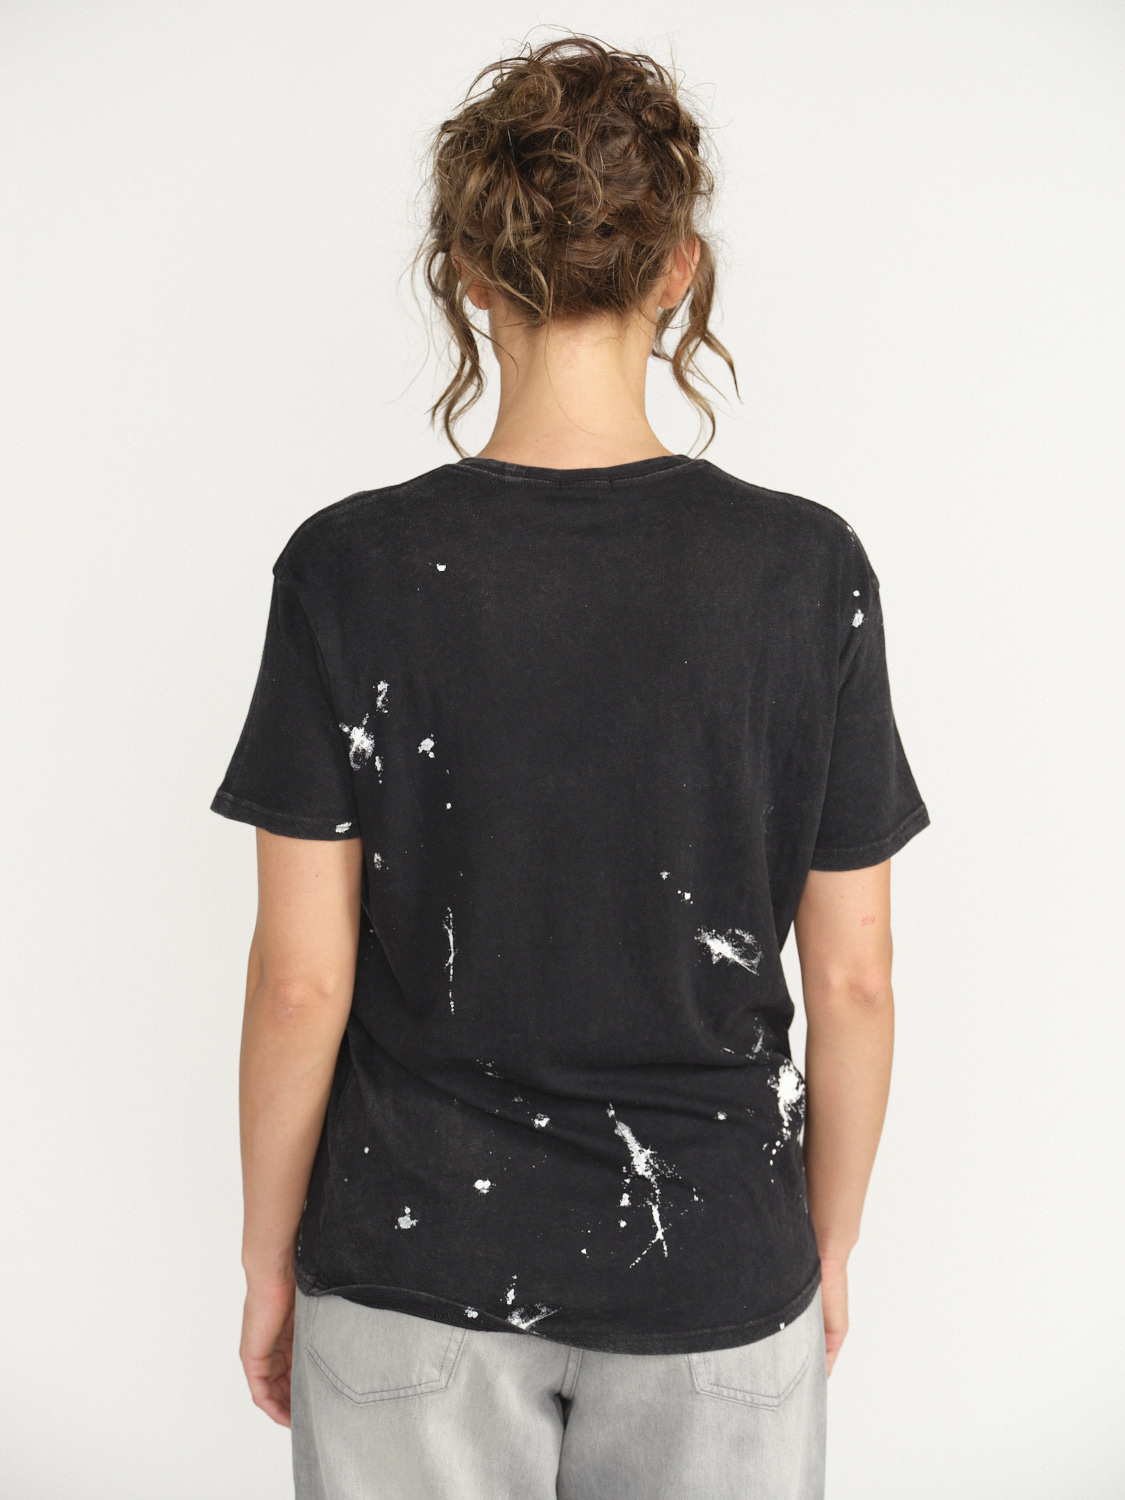 R13 New York Boy T-Shirt - Splatter shirt made of cotton  black S